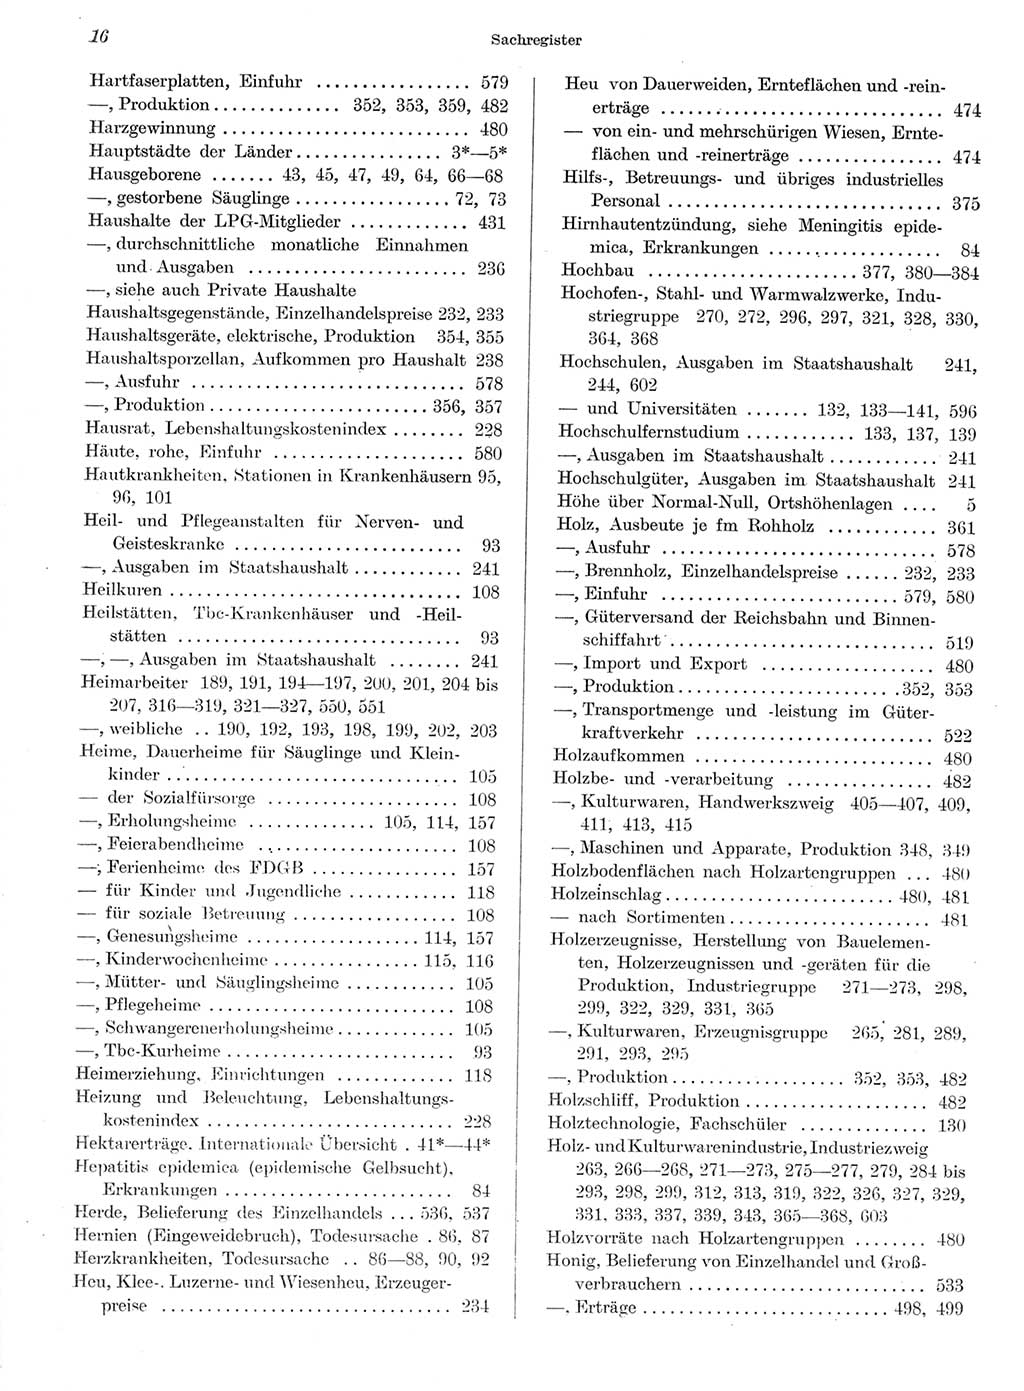 Statistisches Jahrbuch der Deutschen Demokratischen Republik (DDR) 1959, Seite 16 (Stat. Jb. DDR 1959, S. 16)